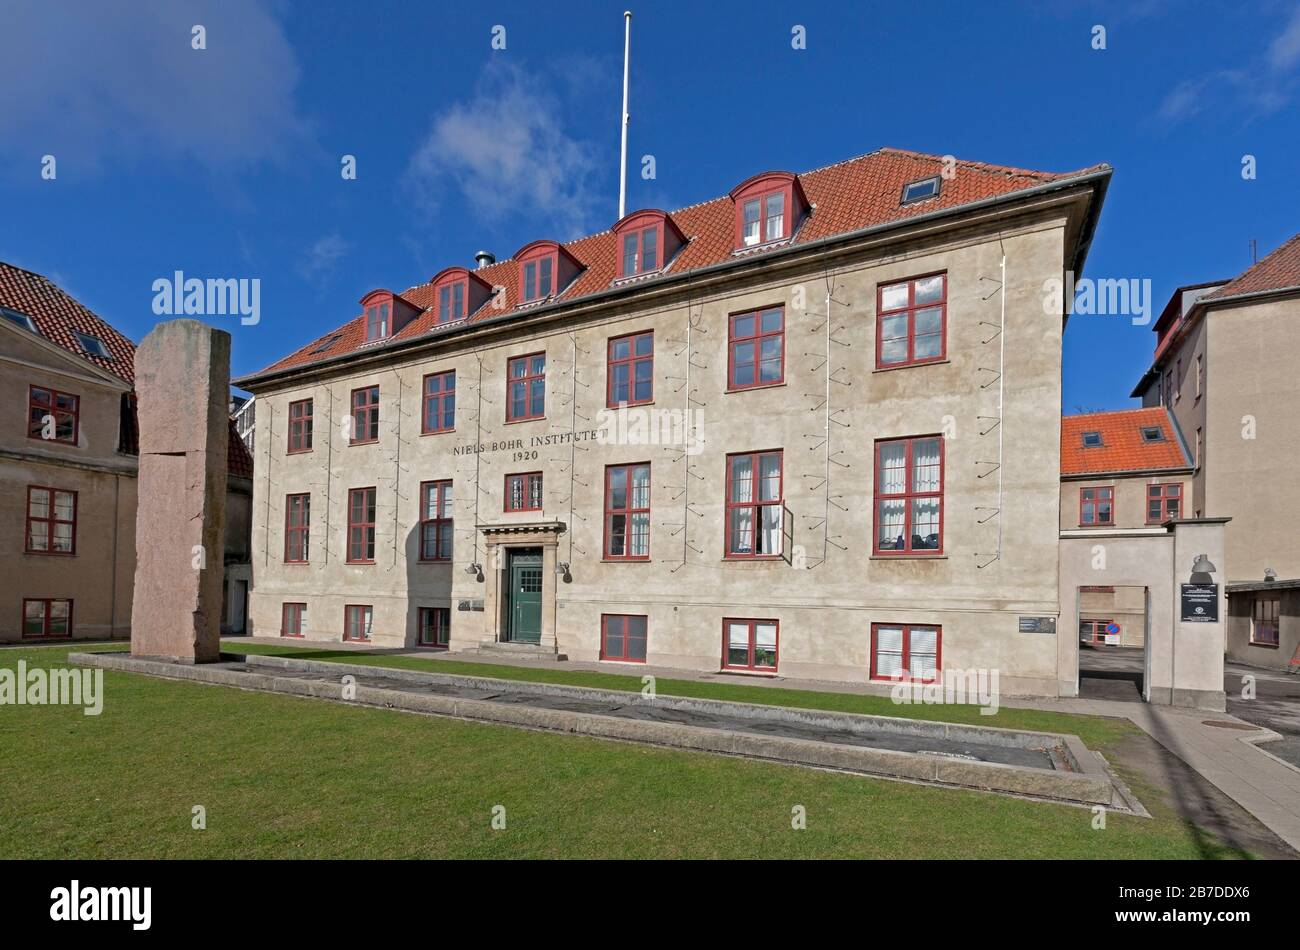 The Niels Bohr Institute from 1920, University of Copenhagen, Denmark. Stock Photo